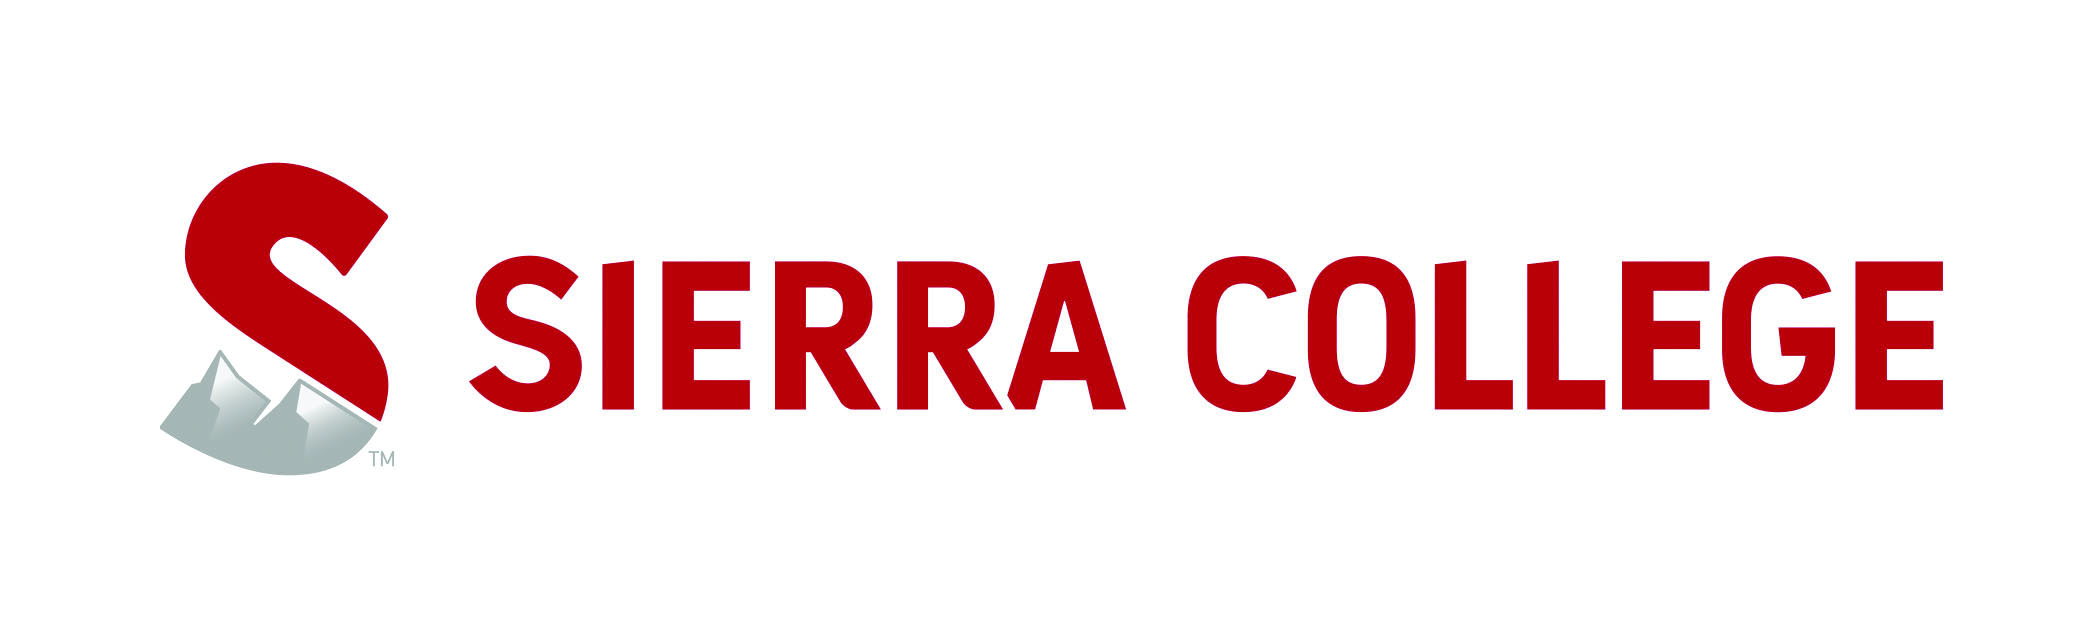 sierra college alternate logo on white-large.jpg